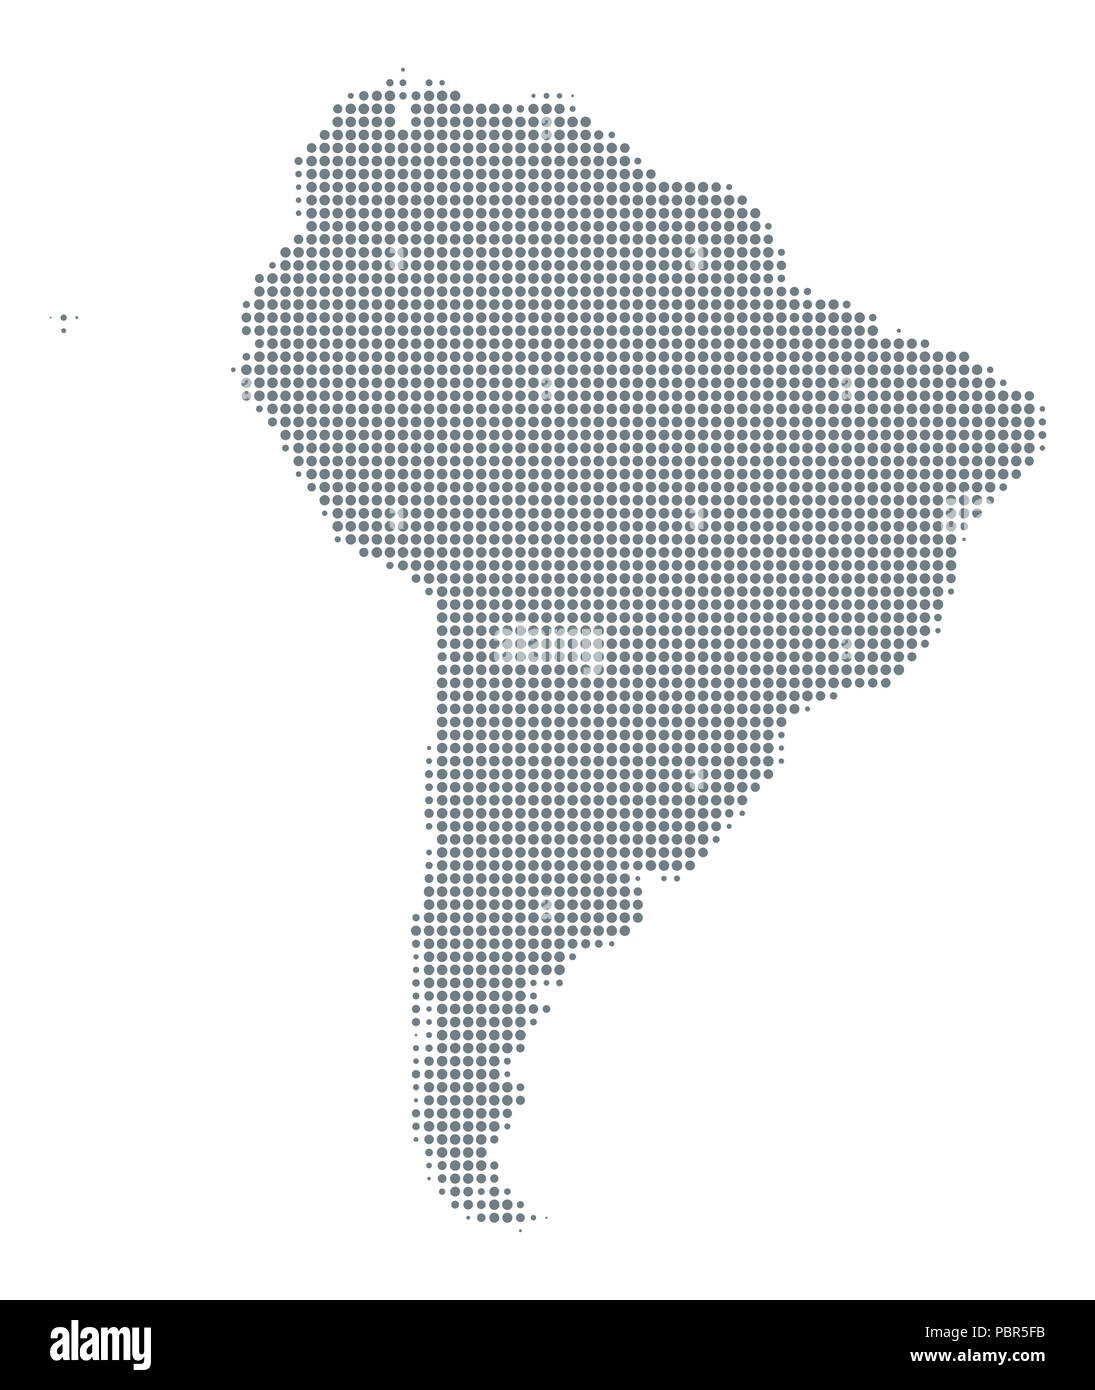 Silueta de América del Sur. Mapa con puntos de semitono de color gris, que varían en tamaño y espaciado. Contorno punteado y la superficie debajo de la proyección Robinson. Foto de stock